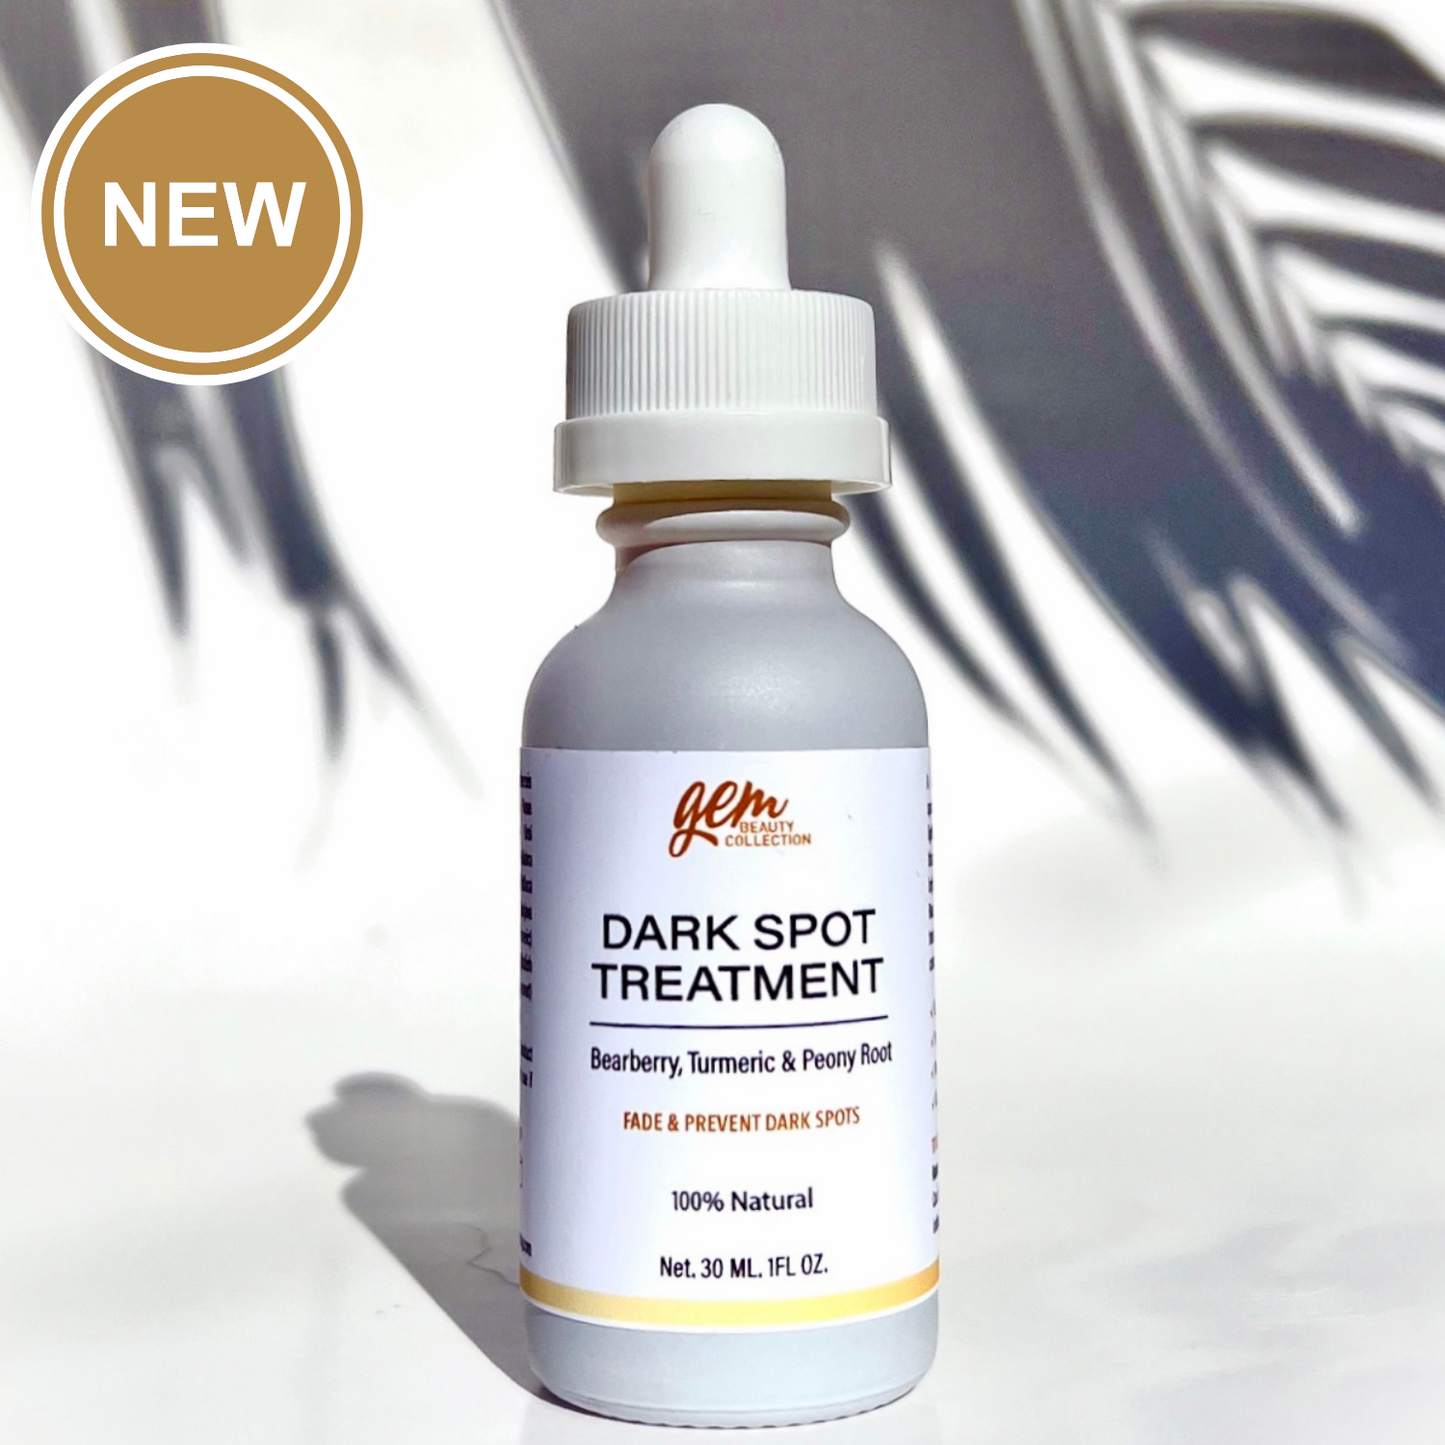 Dark Spot Treatment - Gem Beauty Collection